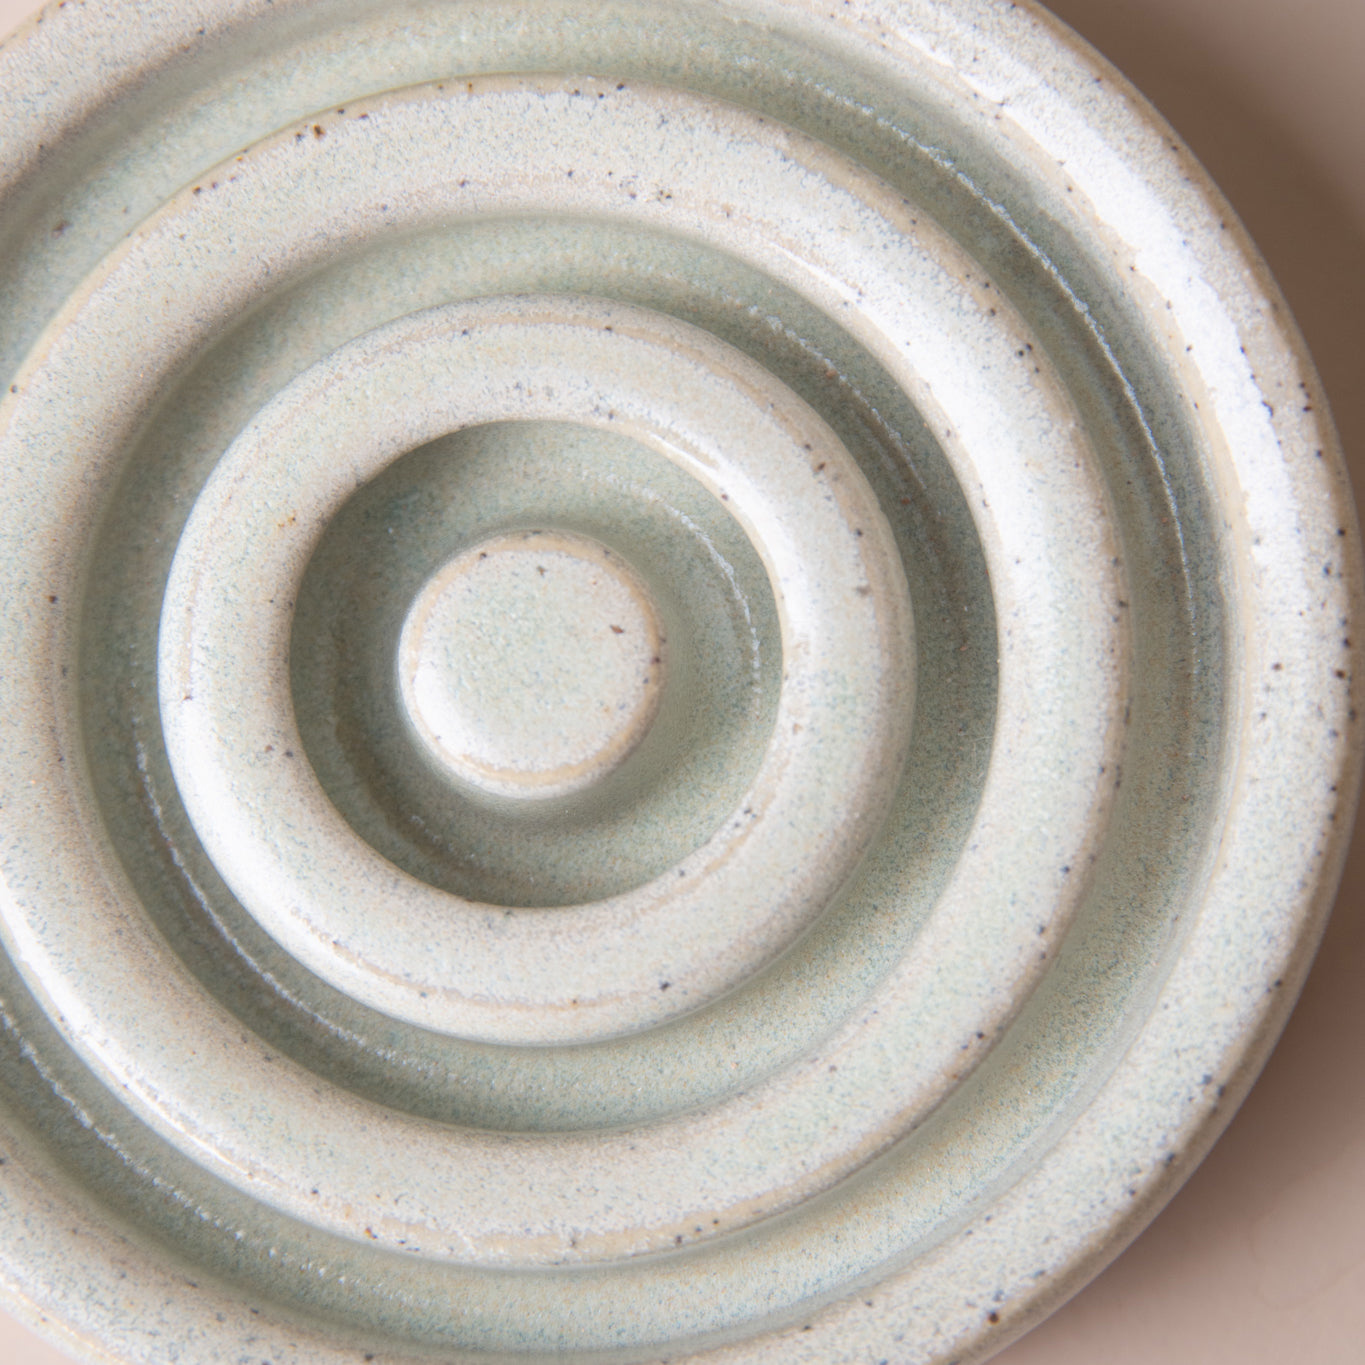 Lauren McQuade Ceramic Circle Soap Dish